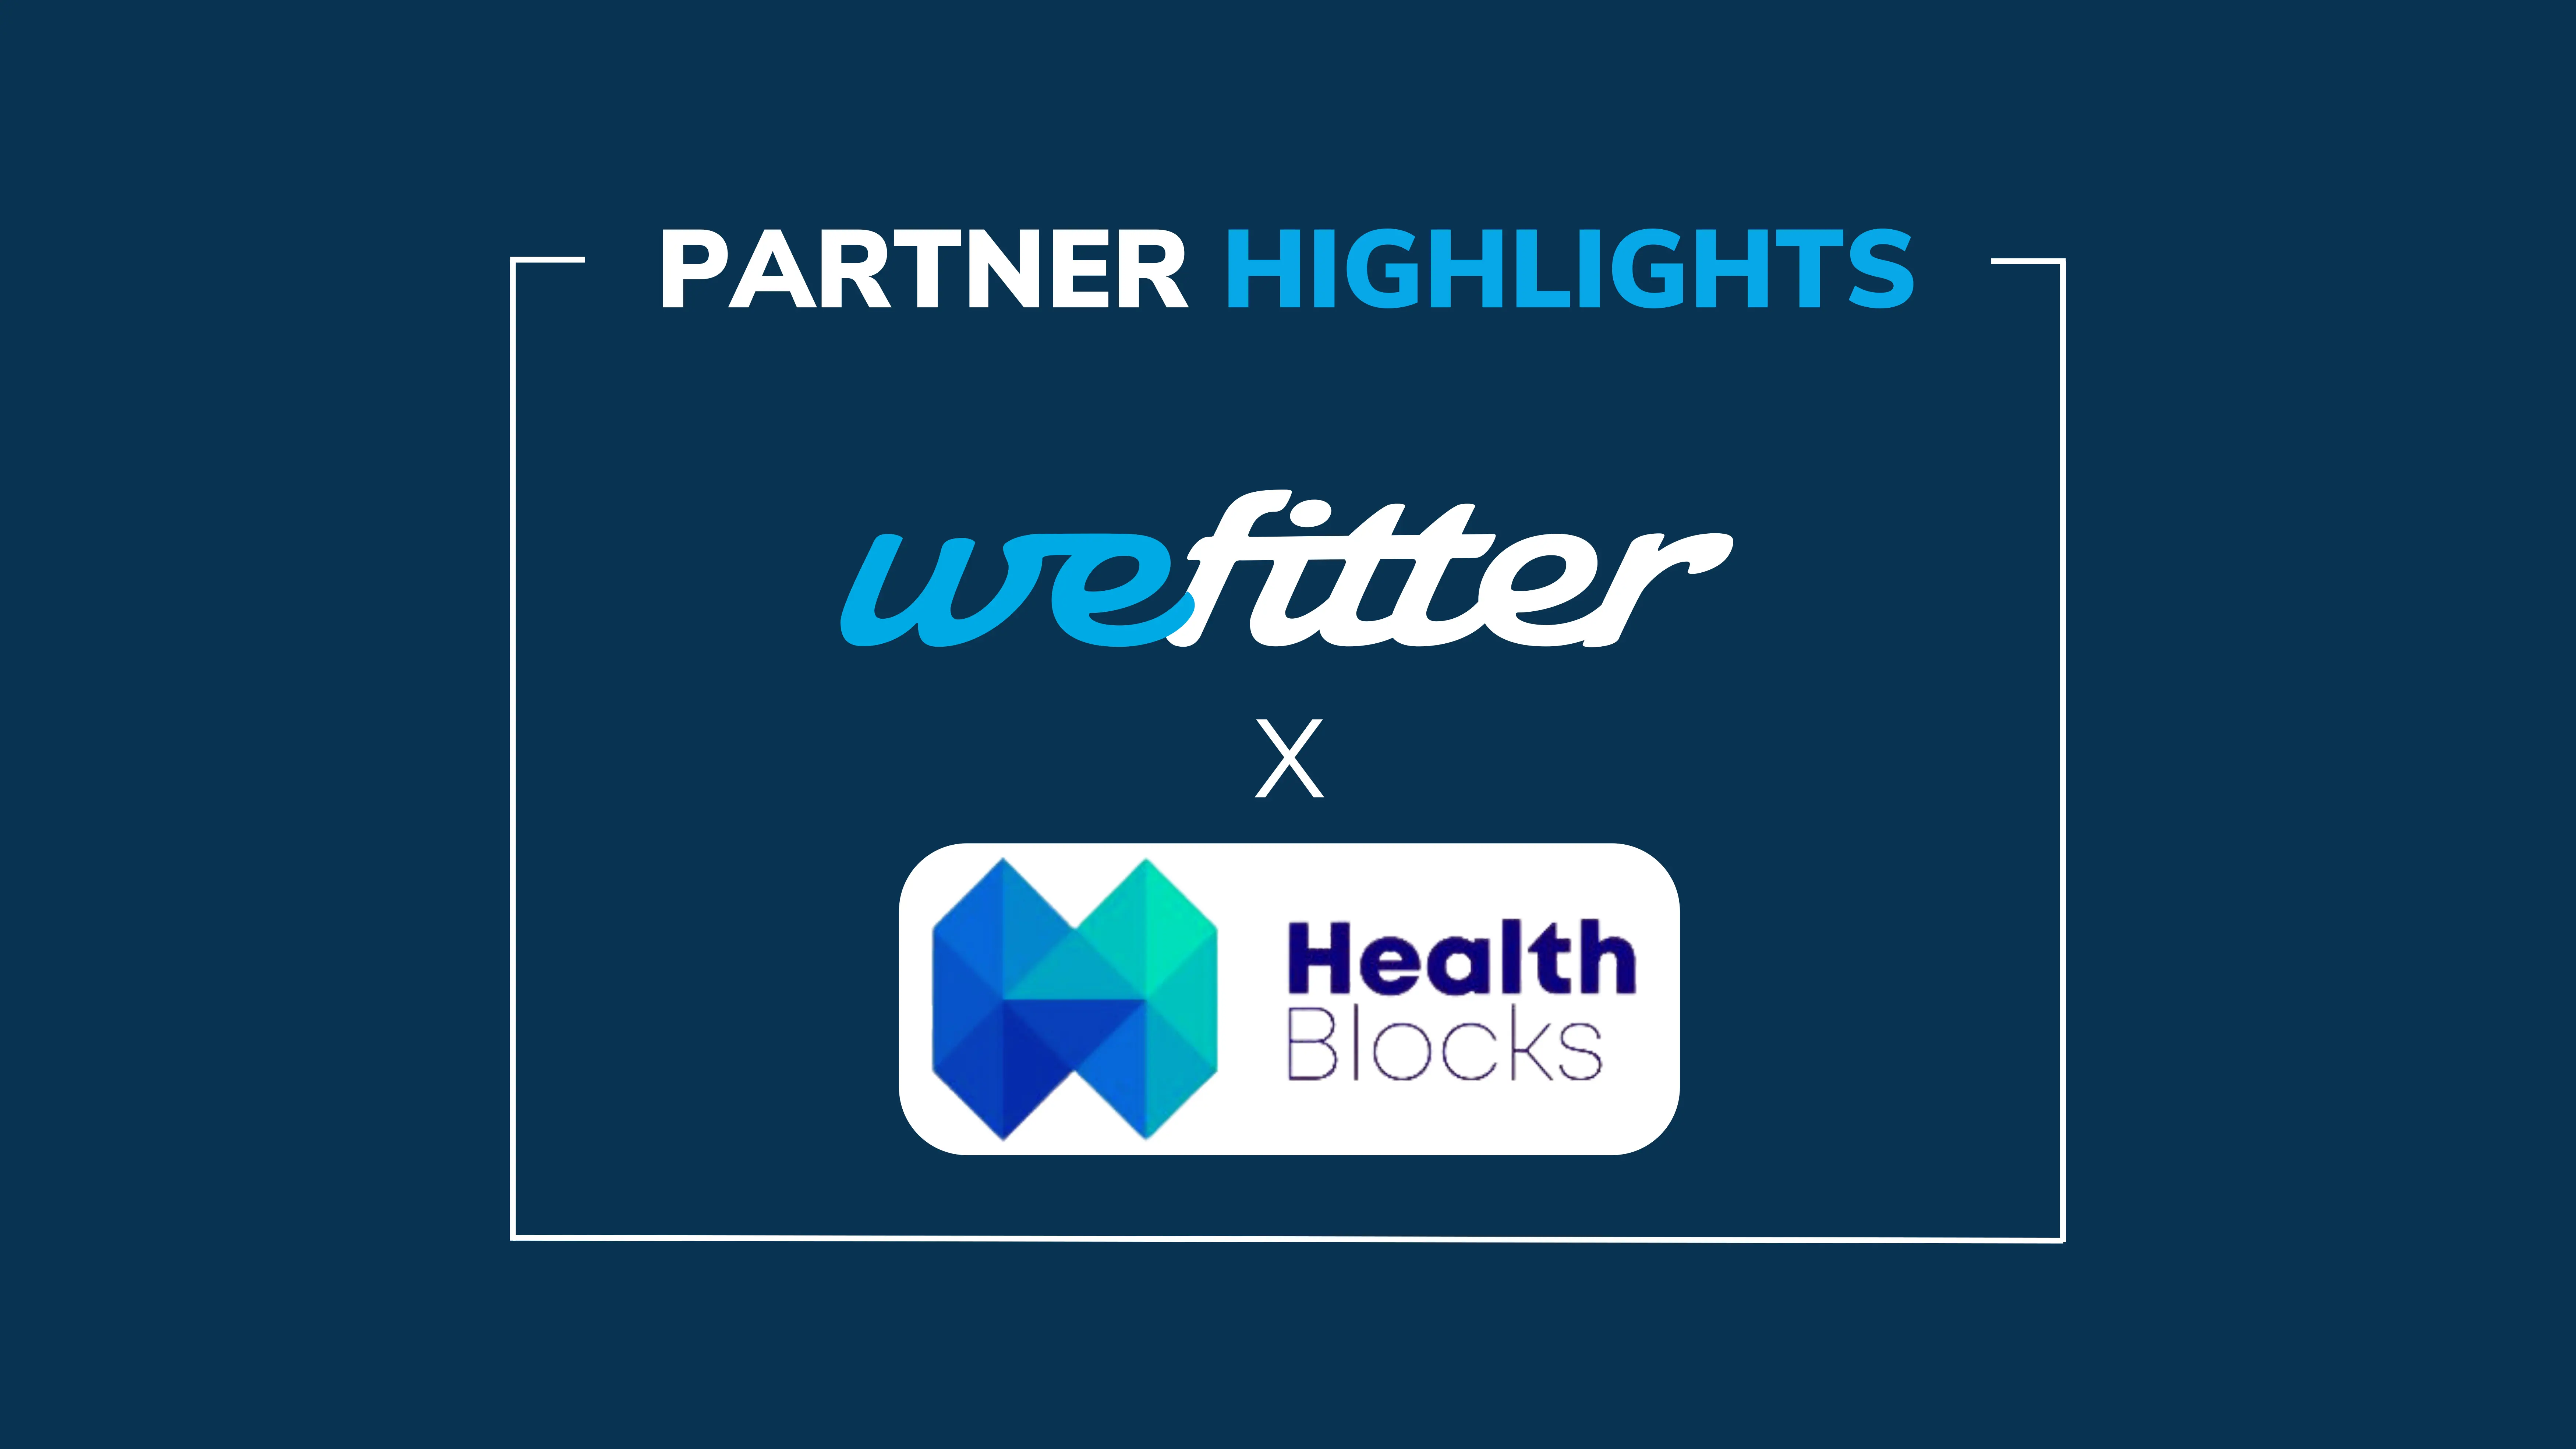 Partner Highlights: HealthBlocks x WeFitter